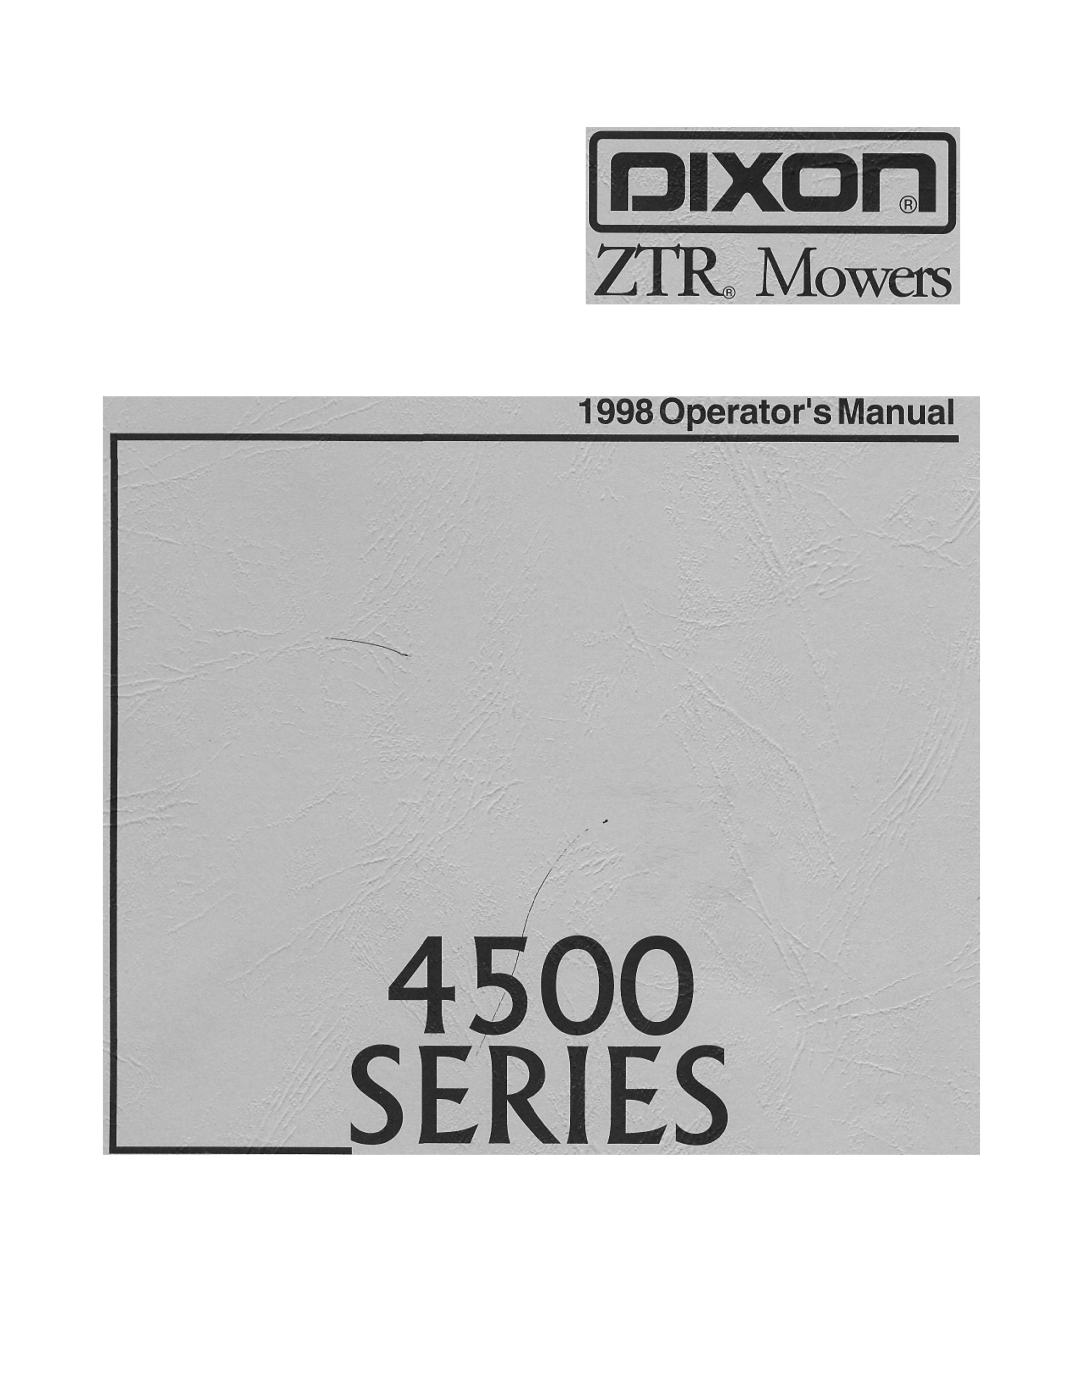 Dixon 4500 Series manual 